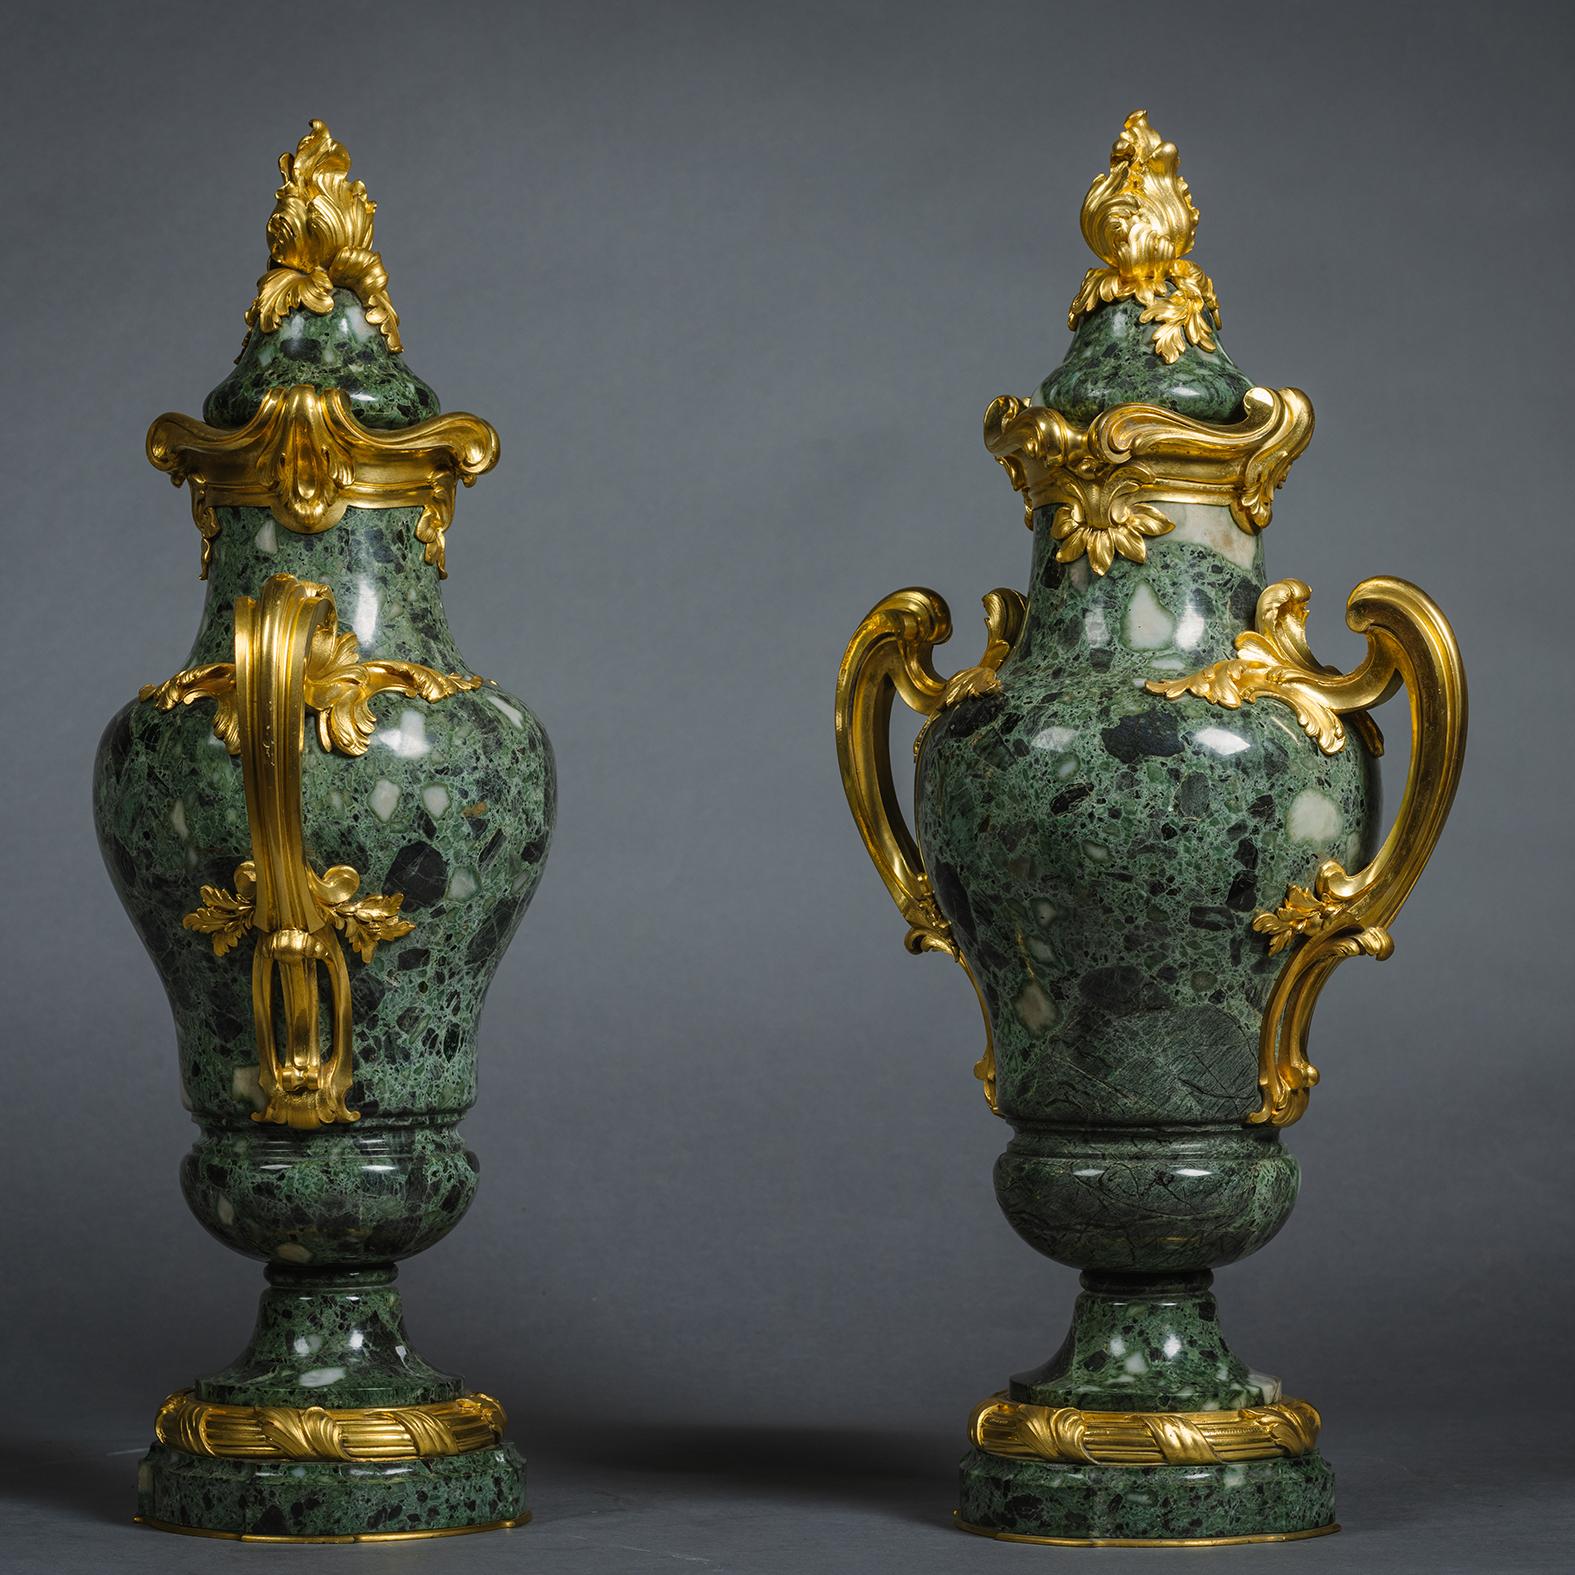 Paire de vases et de couvercles en marbre Verde Antico de style Louis XVI, montés en bronze doré, par Susse Frères, d'après un dessin de F. Rambaud.  
 
Chaque vase est de forme balustre, avec un fleuron d'acanthe et des poignées à volutes.

Chacune